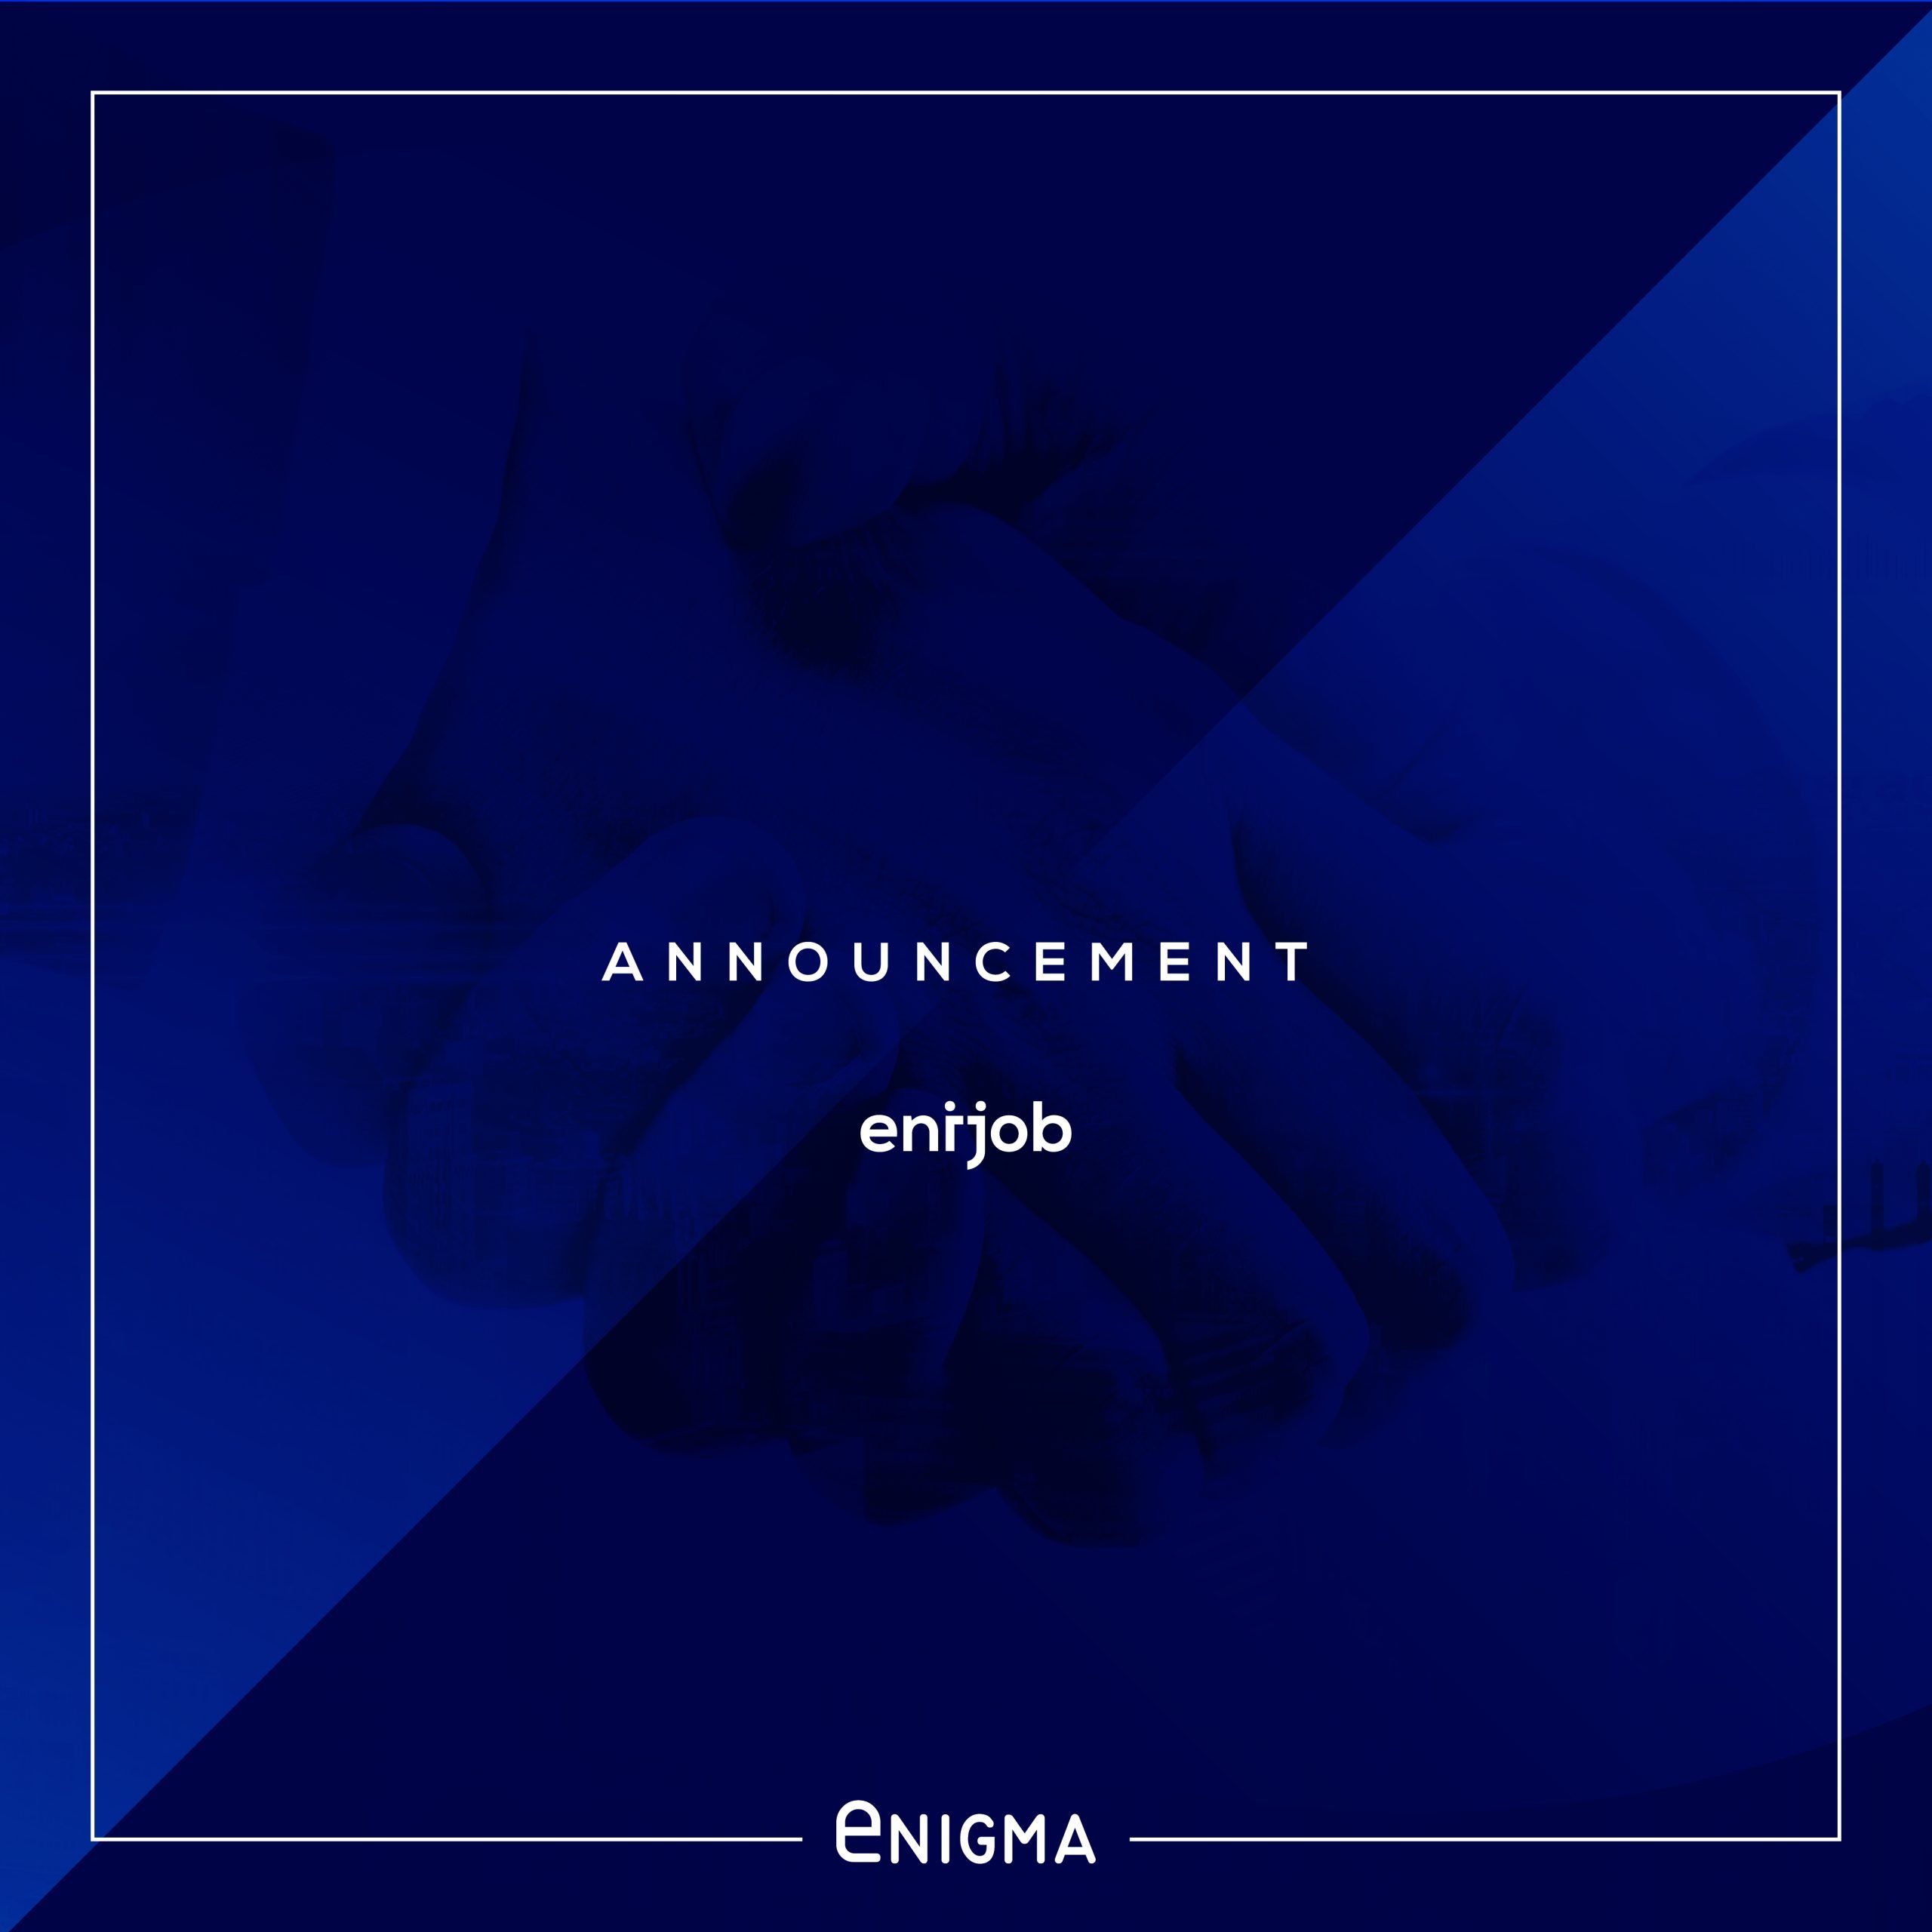 enijob announcement design